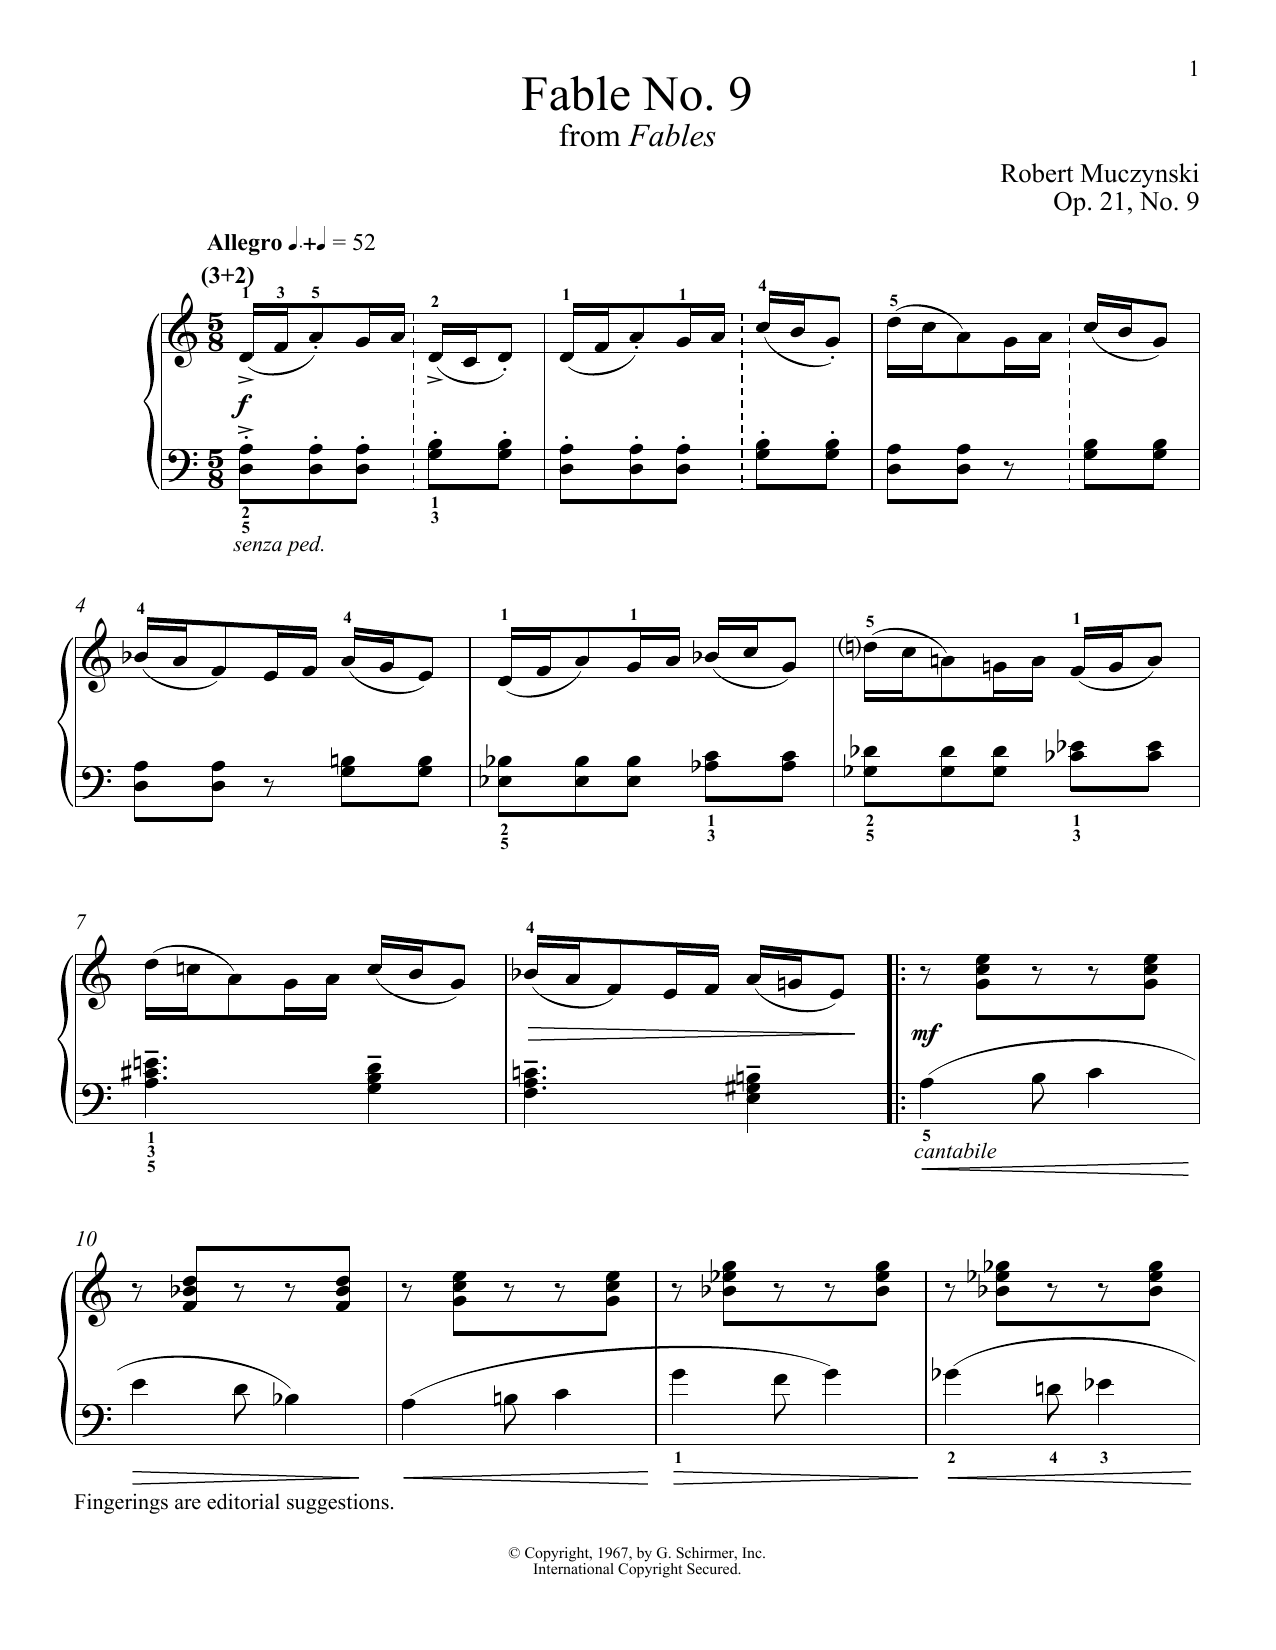 Download Robert Muczynski Fable No. 9, Op. 21 Sheet Music